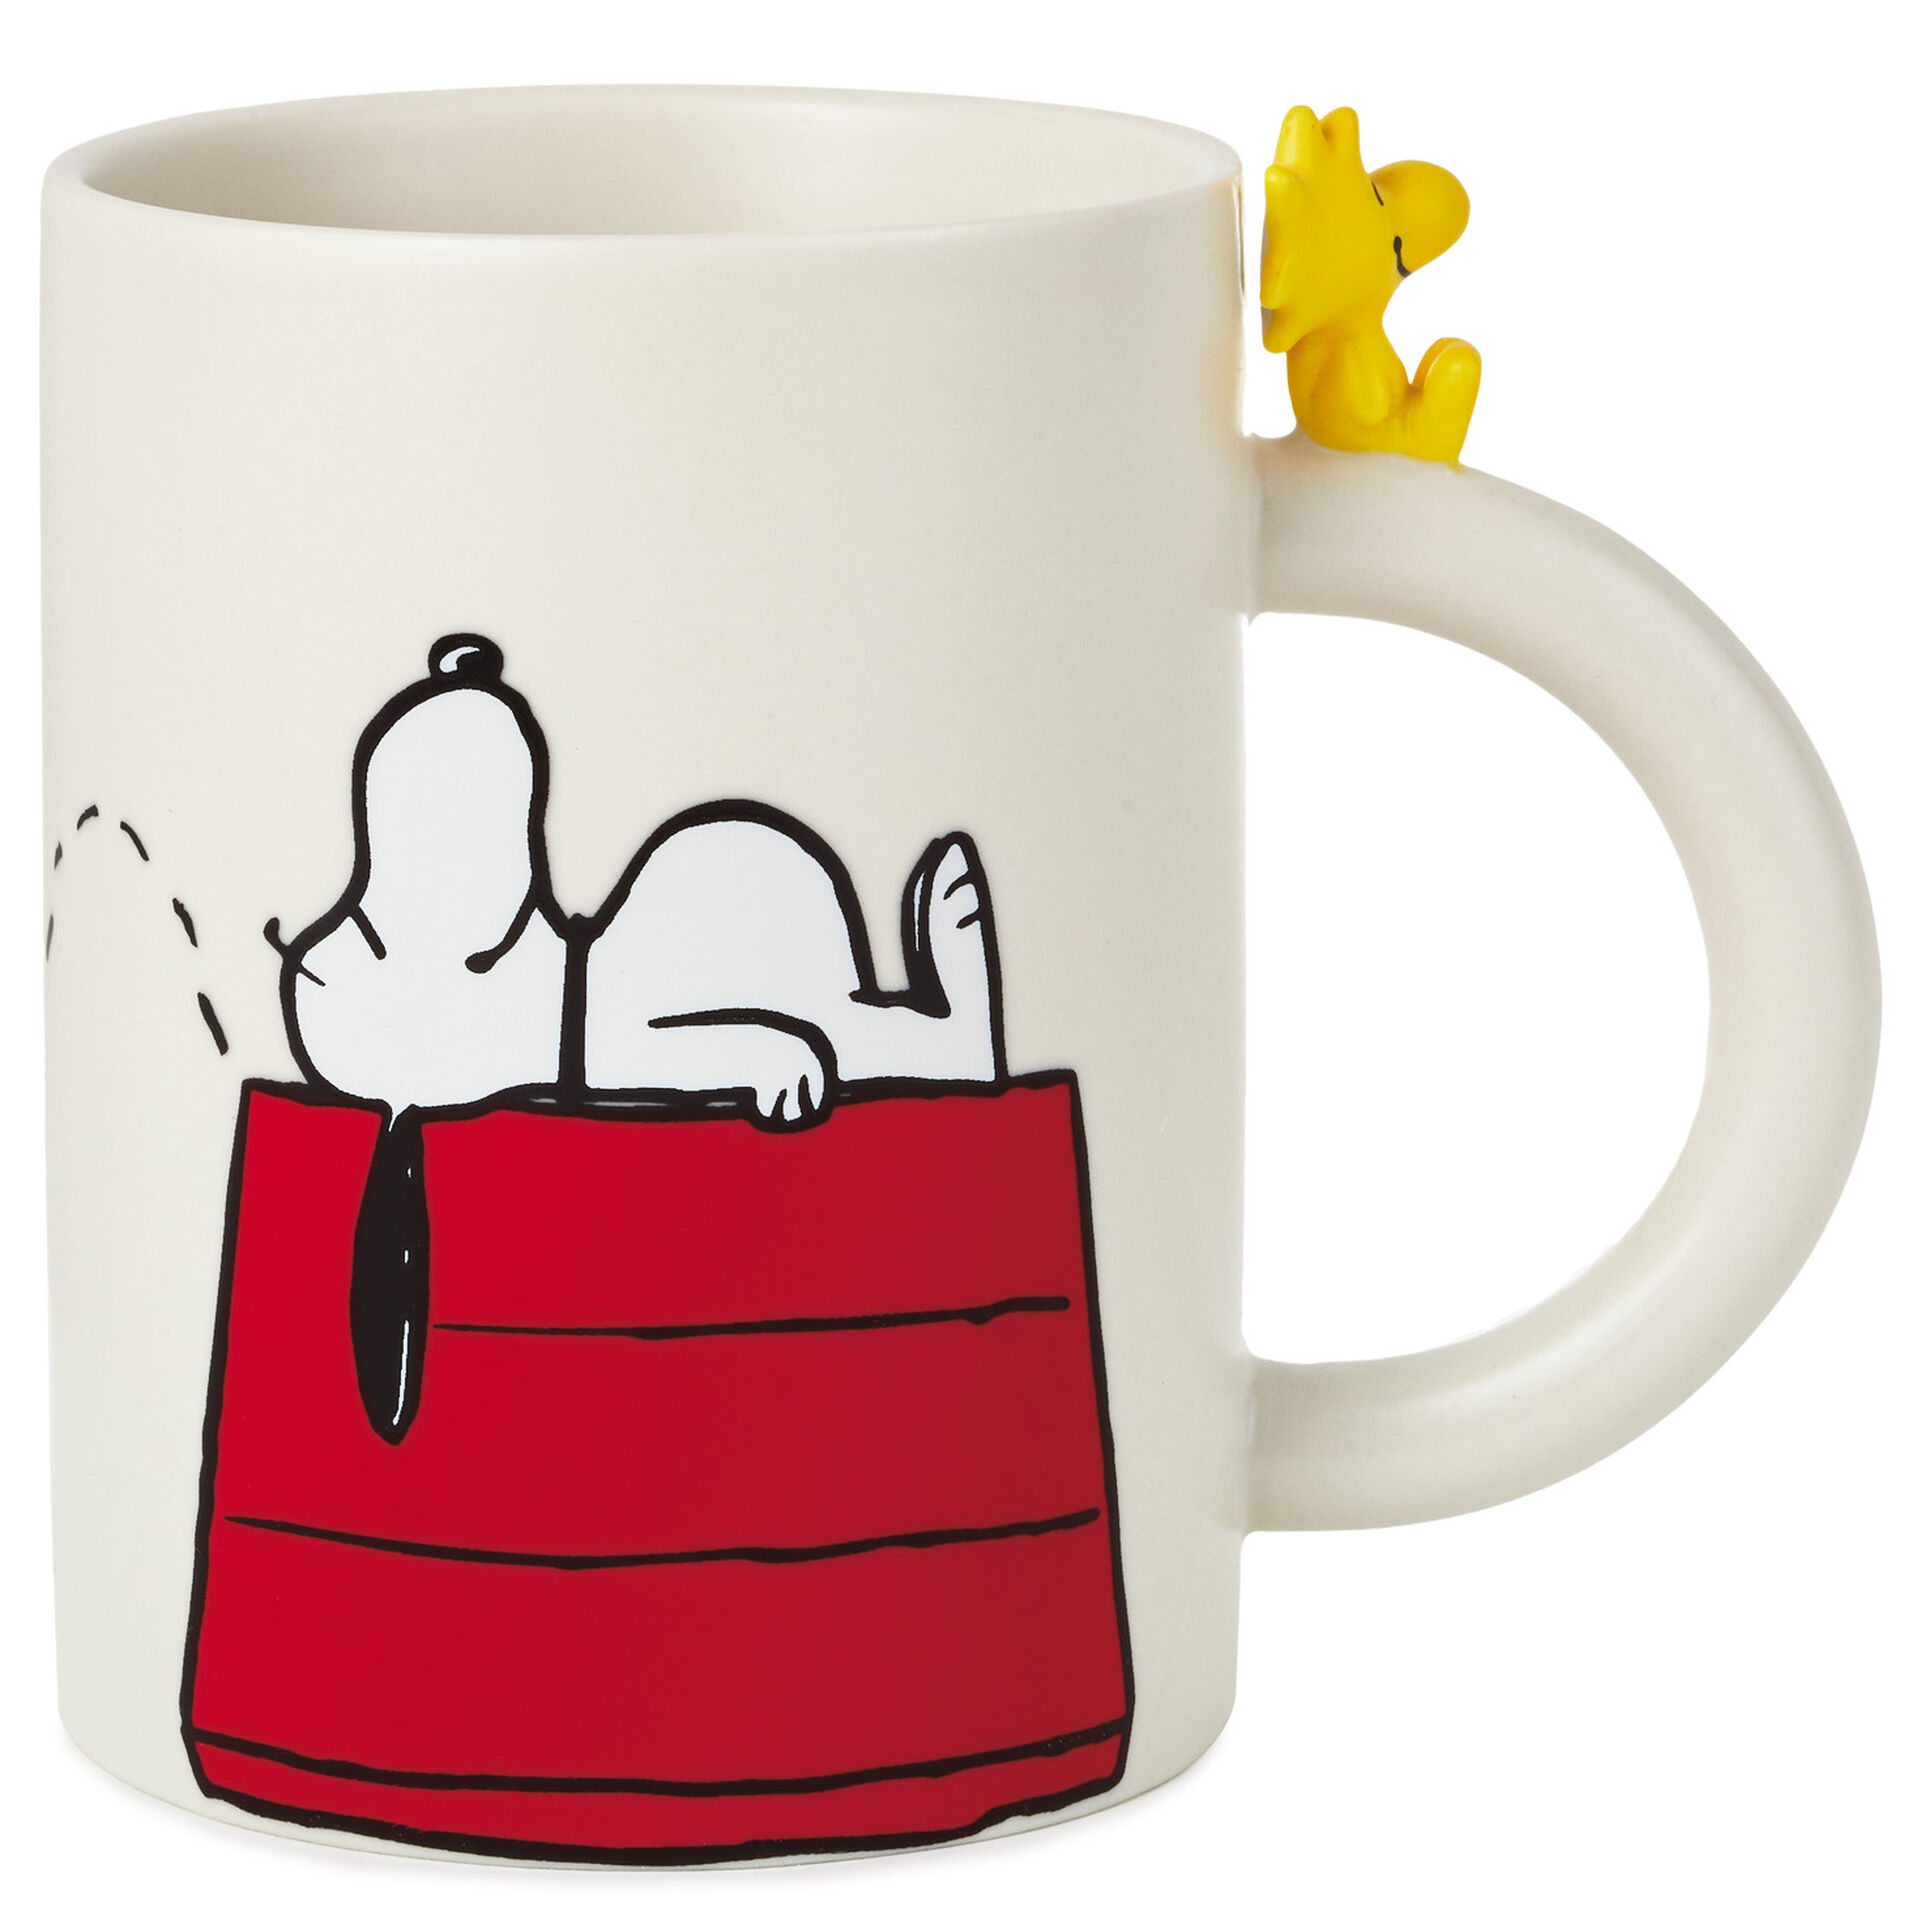 Peanuts Dimensional Snoopy And Woodstock Mug 16 5 Oz Mugs Teacups Hallmark